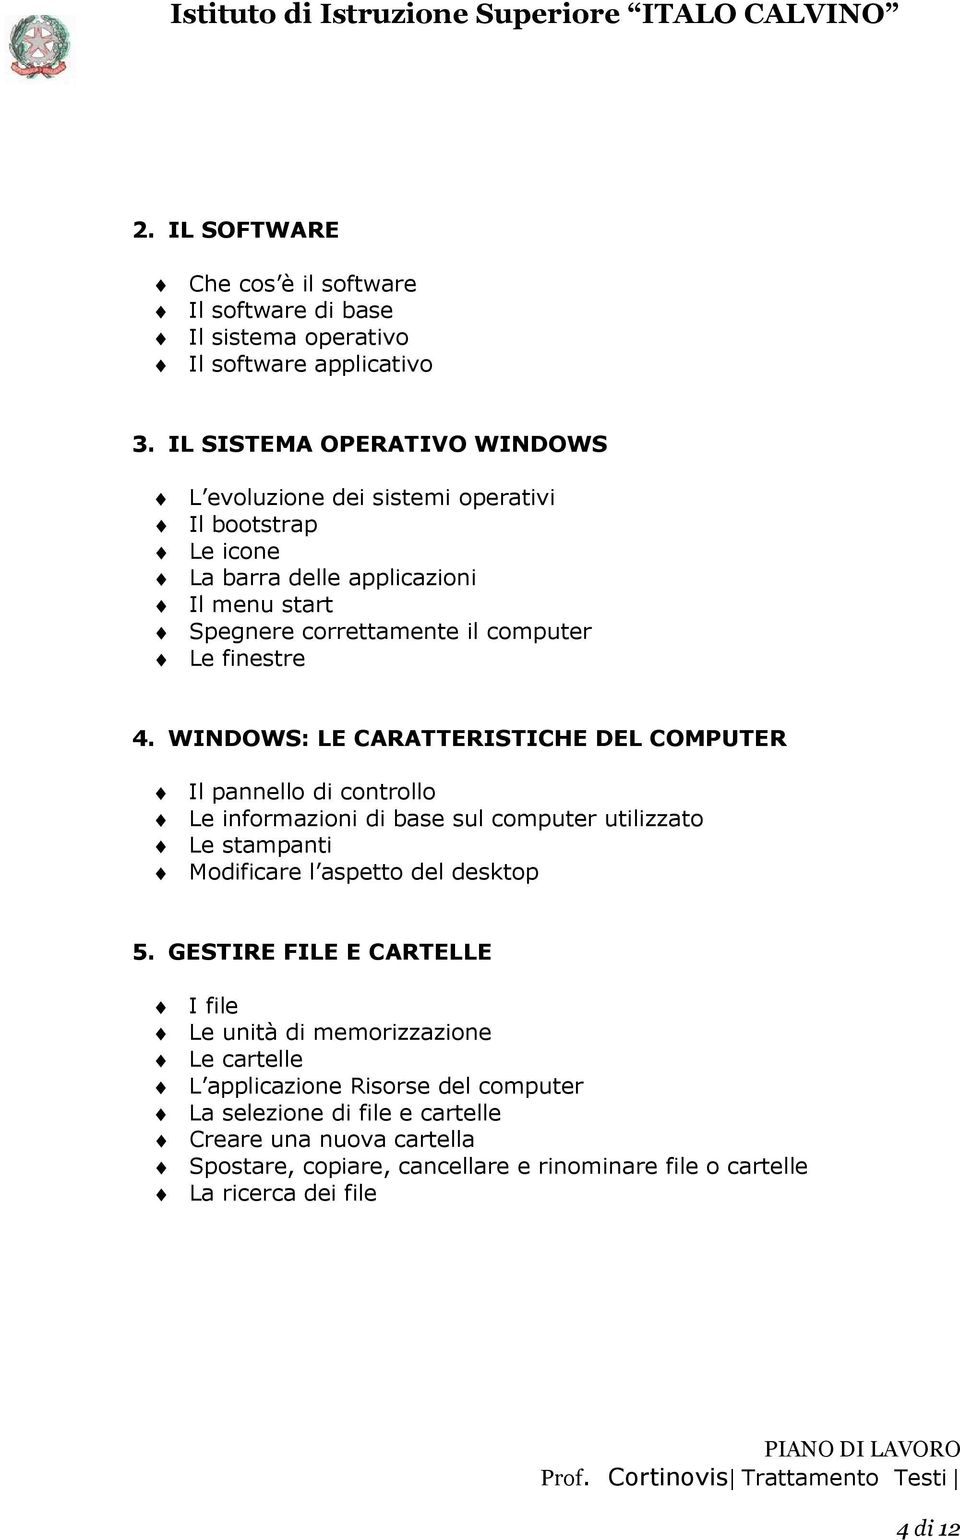 finestre 4. WINDOWS: LE CARATTERISTICHE DEL COMPUTER Il pannello di controllo Le informazioni di base sul computer utilizzato Le stampanti Modificare l aspetto del desktop 5.